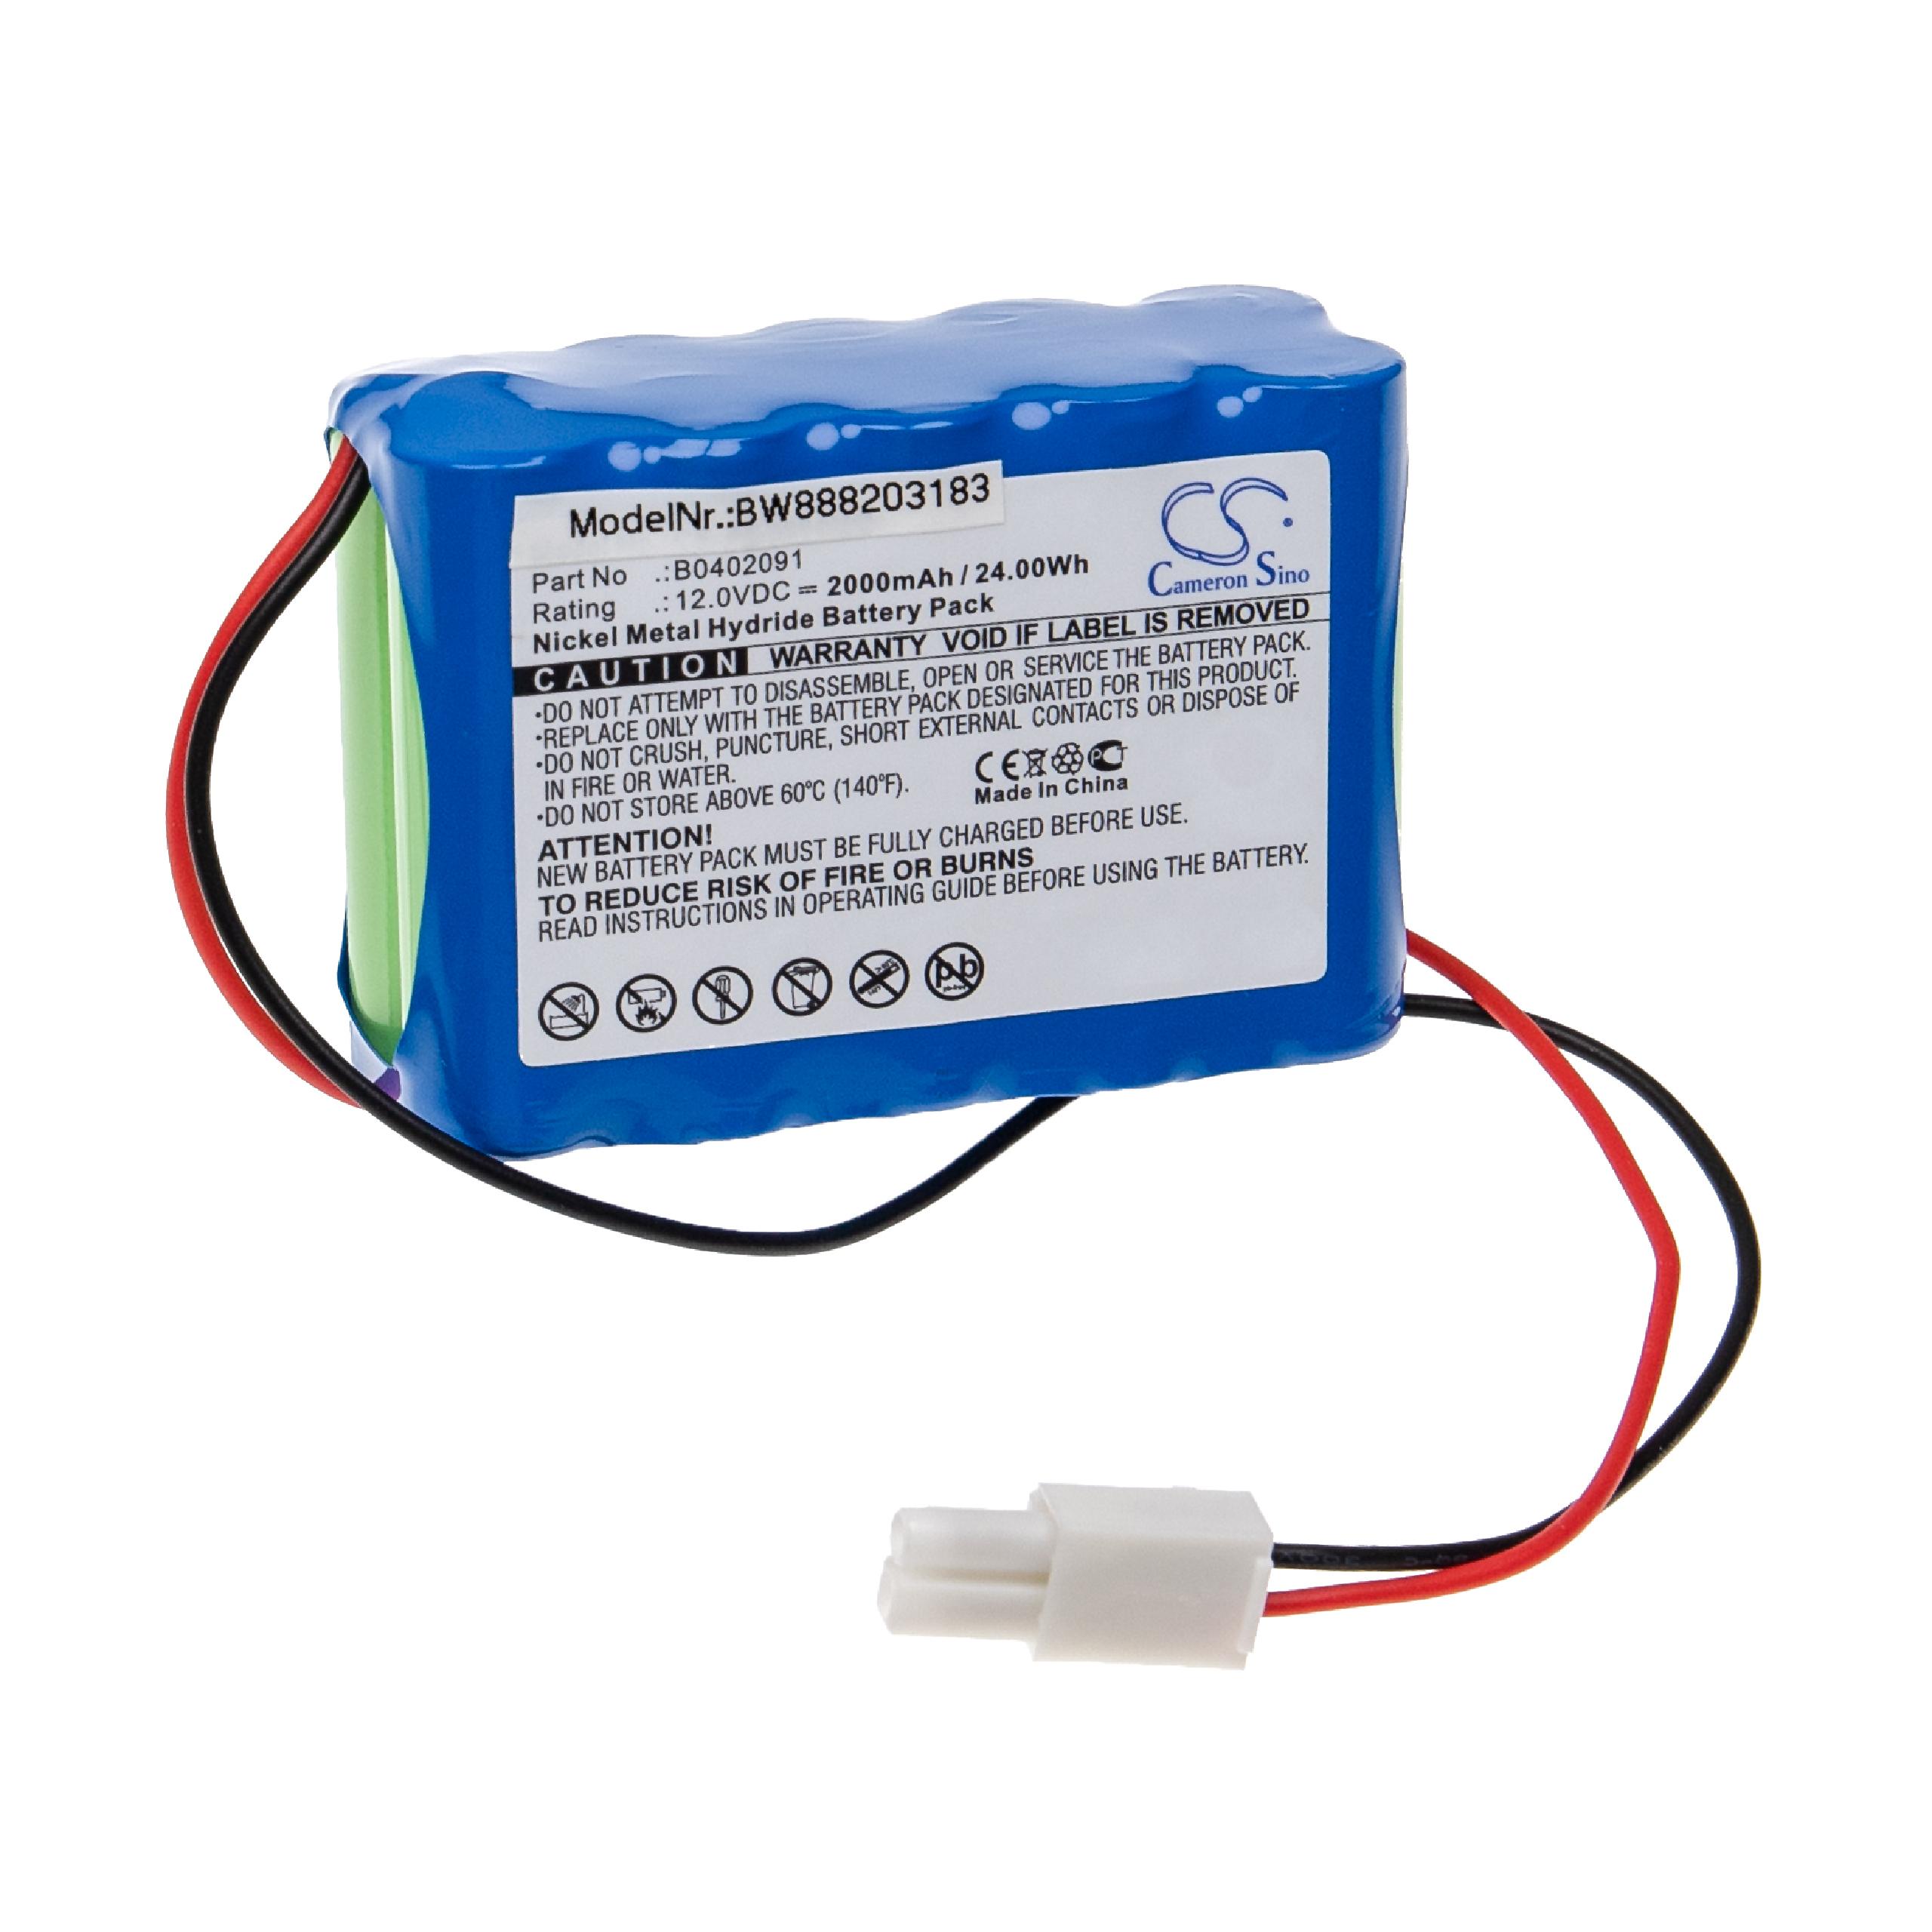 Batterie remplace Aeonmed B0402091 pour appareil médical - 2000mAh 12V NiMH